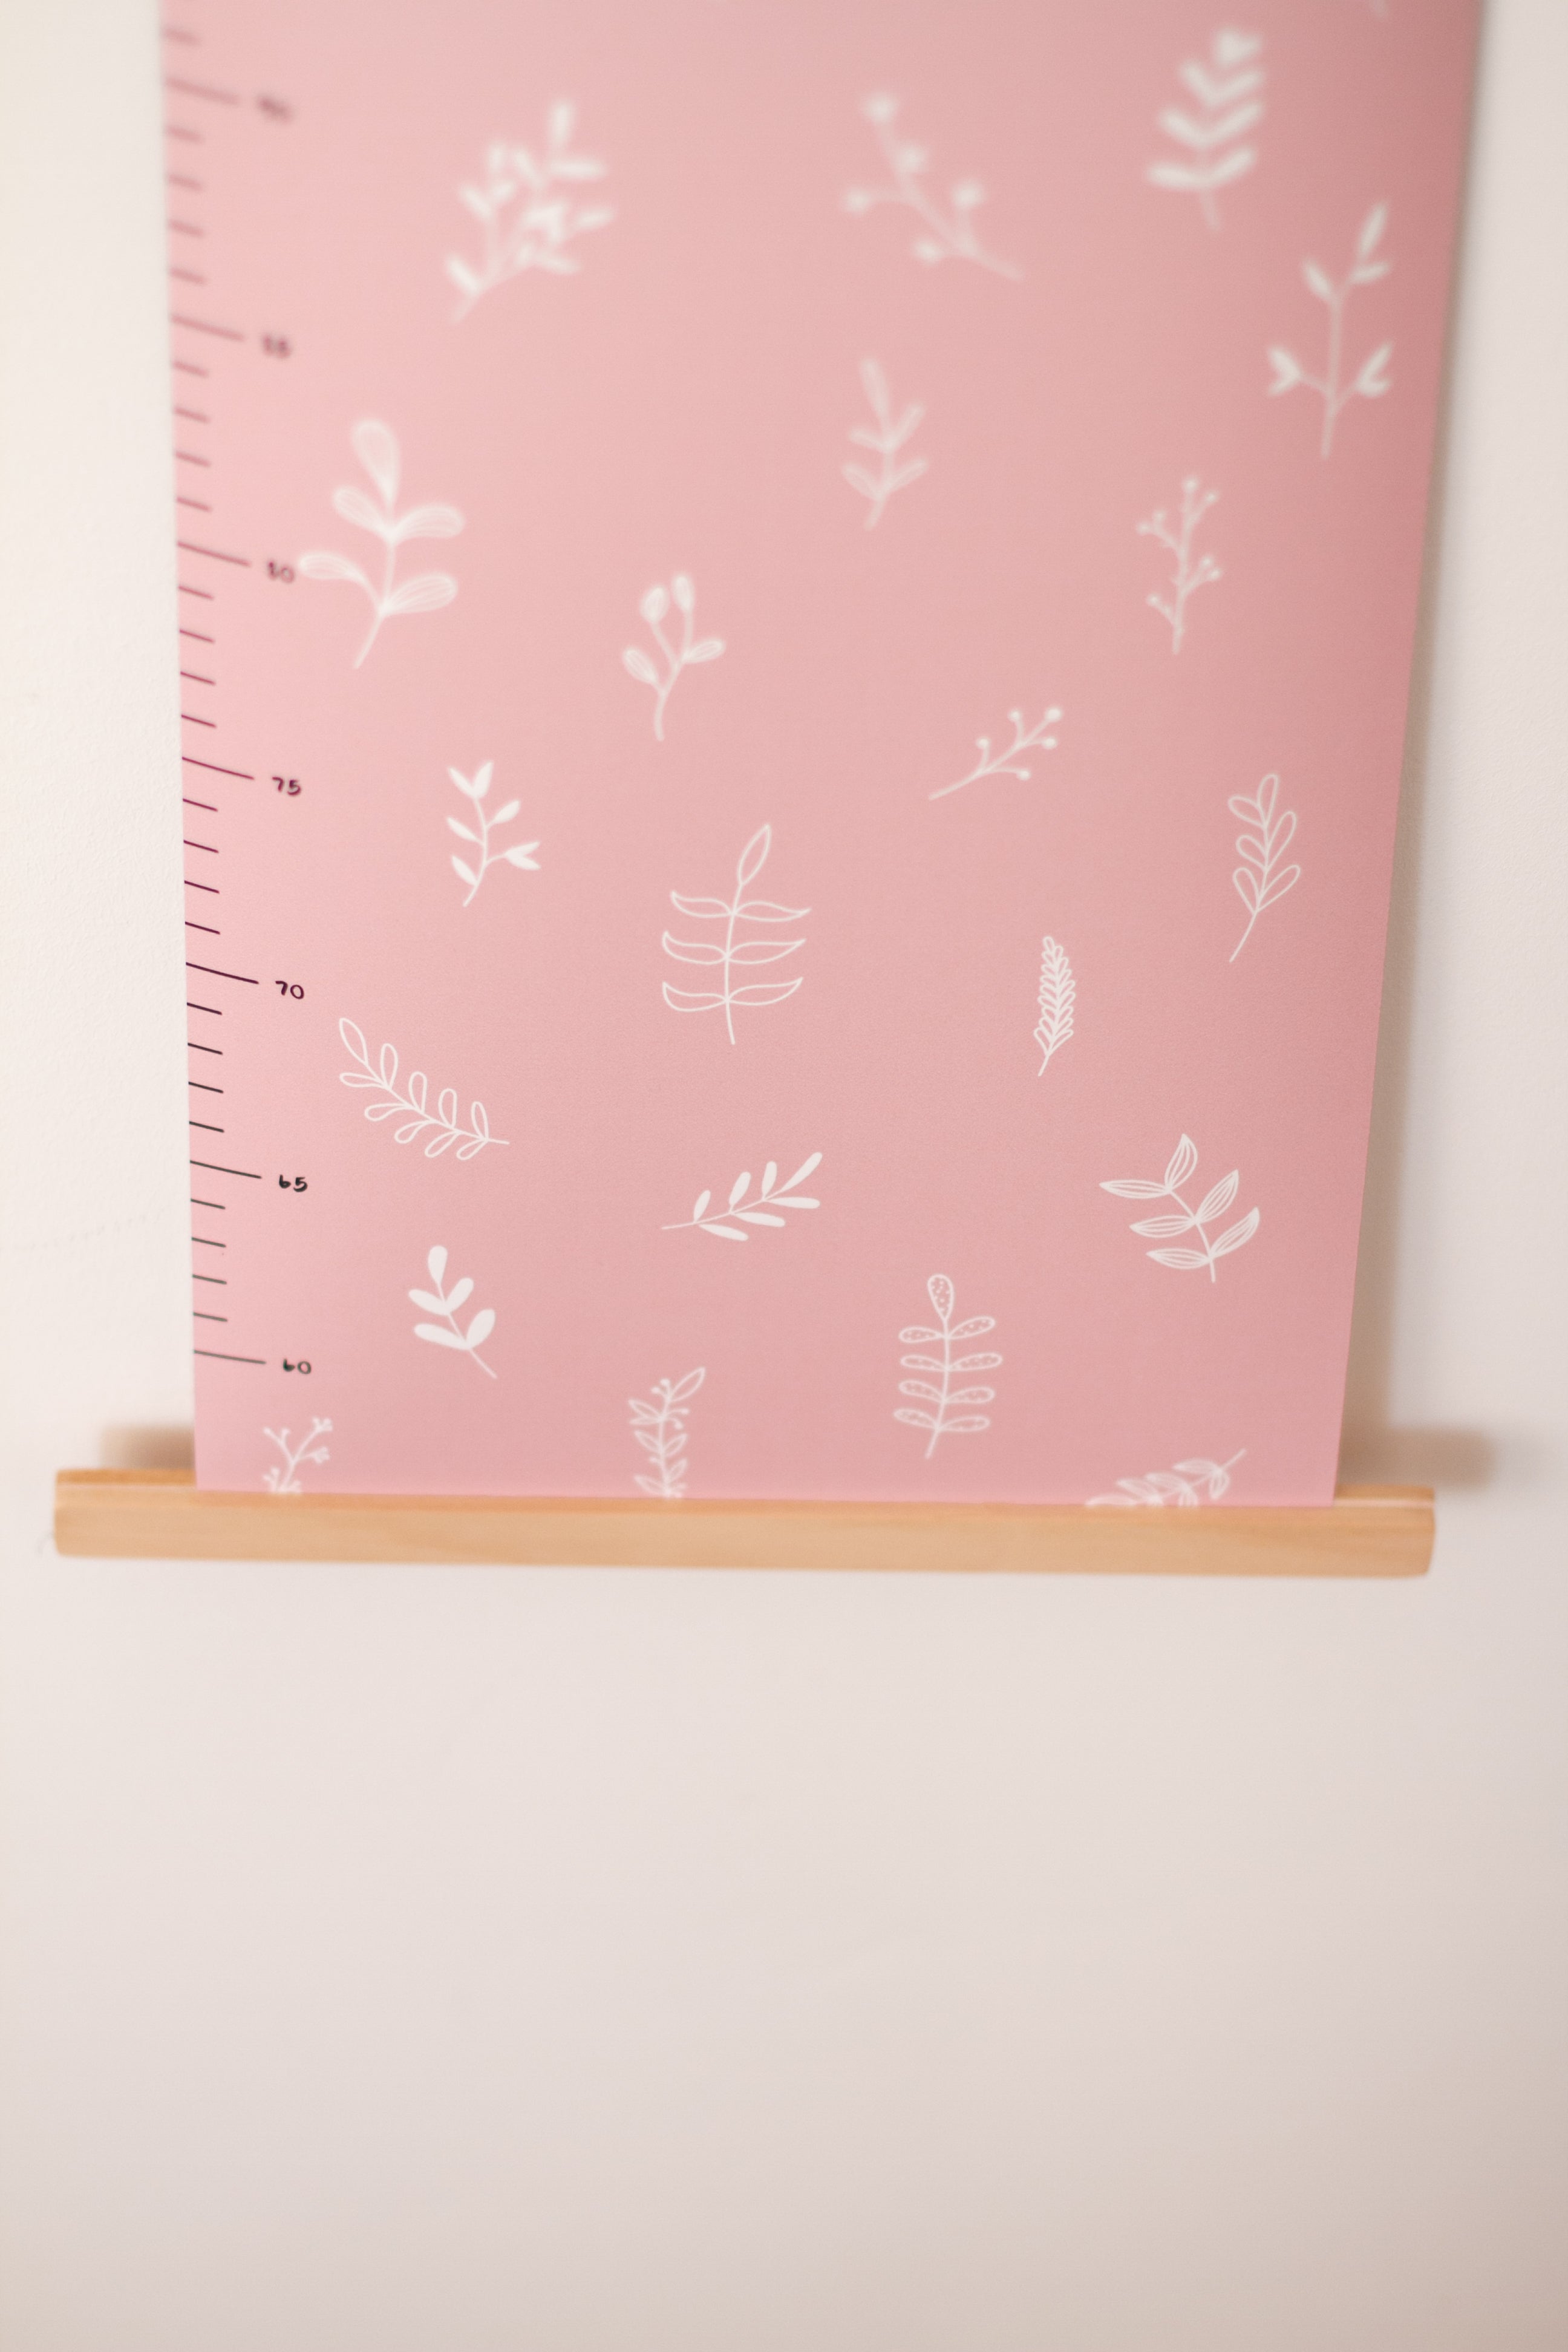 Messlatte Kinderzimmer "Bloom" in rosa inkl. 10 Pfeilsticker